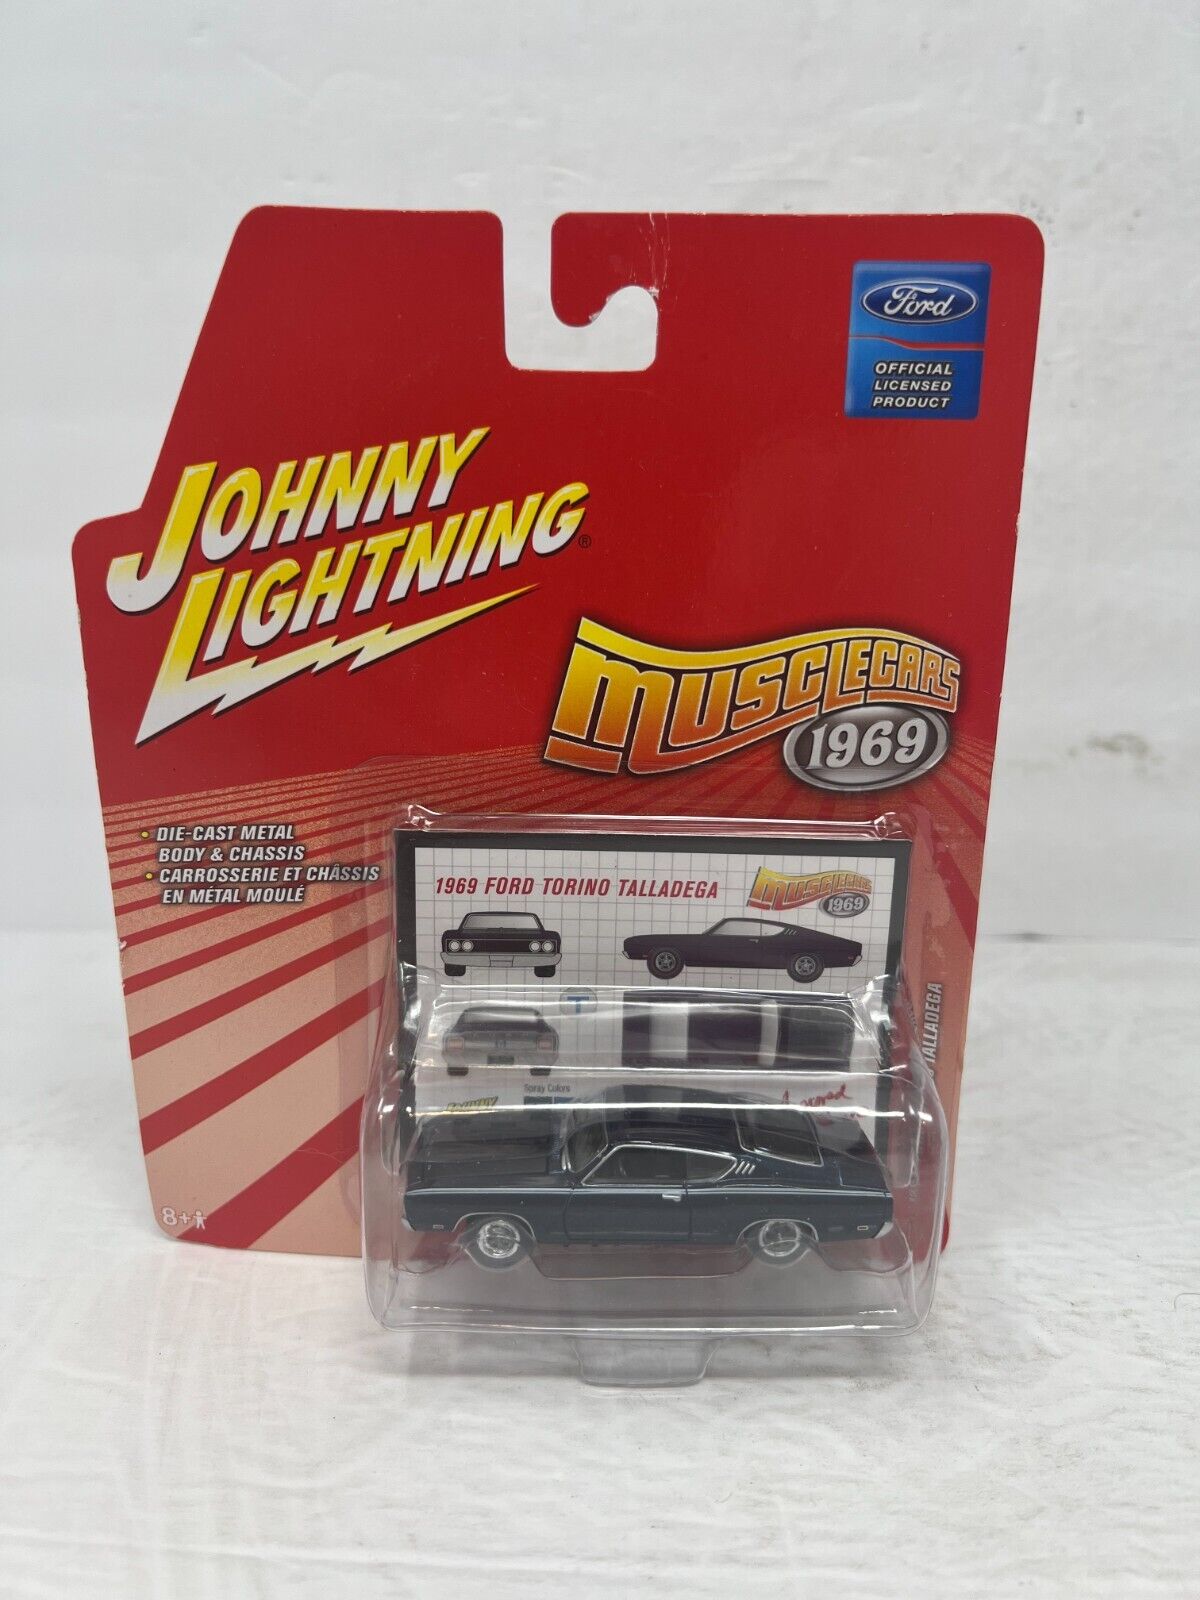 Johnny Lightning Musclecars 1969 Ford Torino Talladega 1:64 Diecast